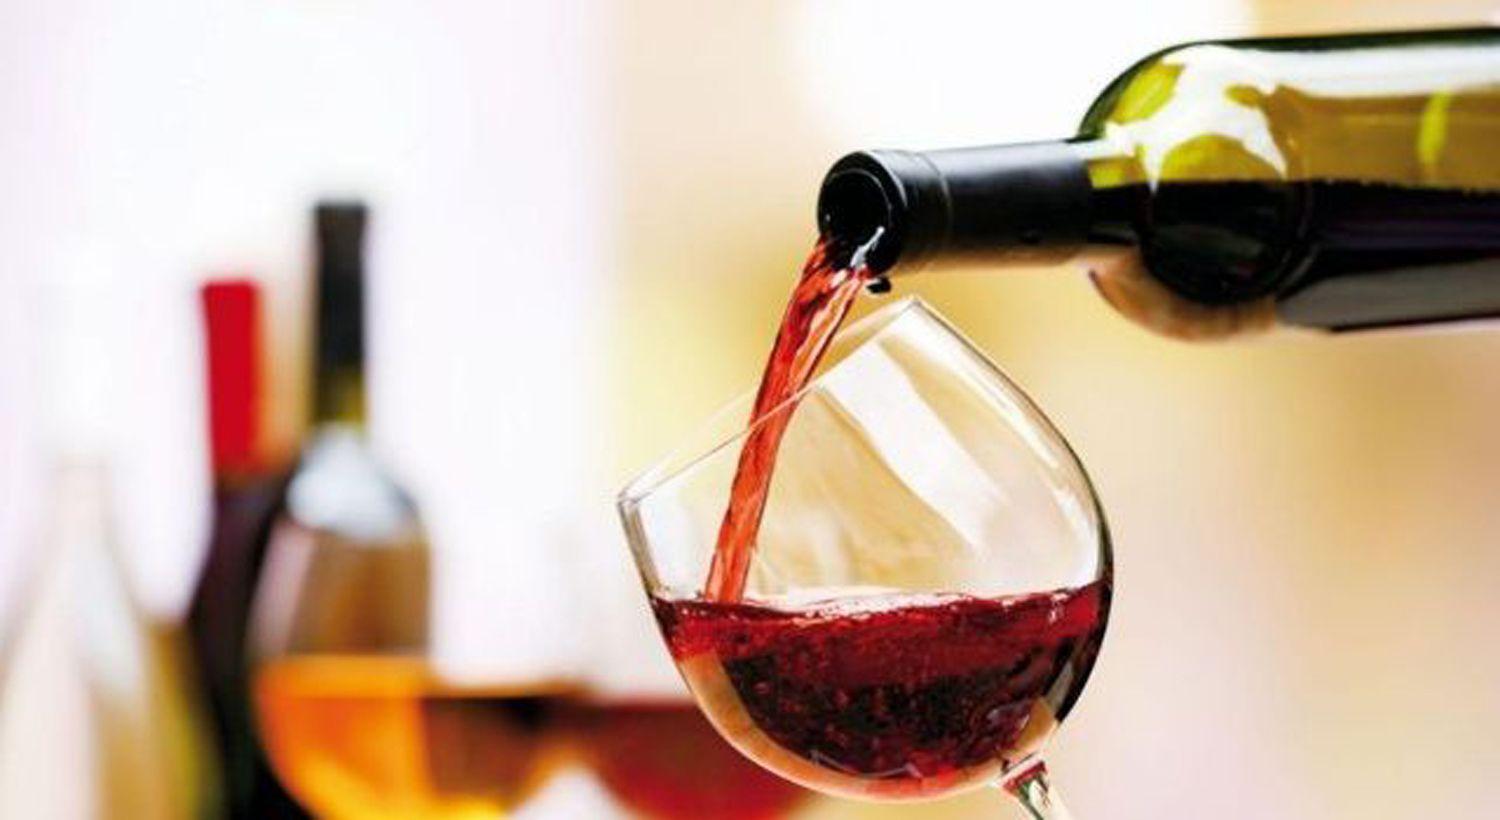 El vino le gana a la cuarentena- maacutes consumo en hogares compensa la baja en restaurantes